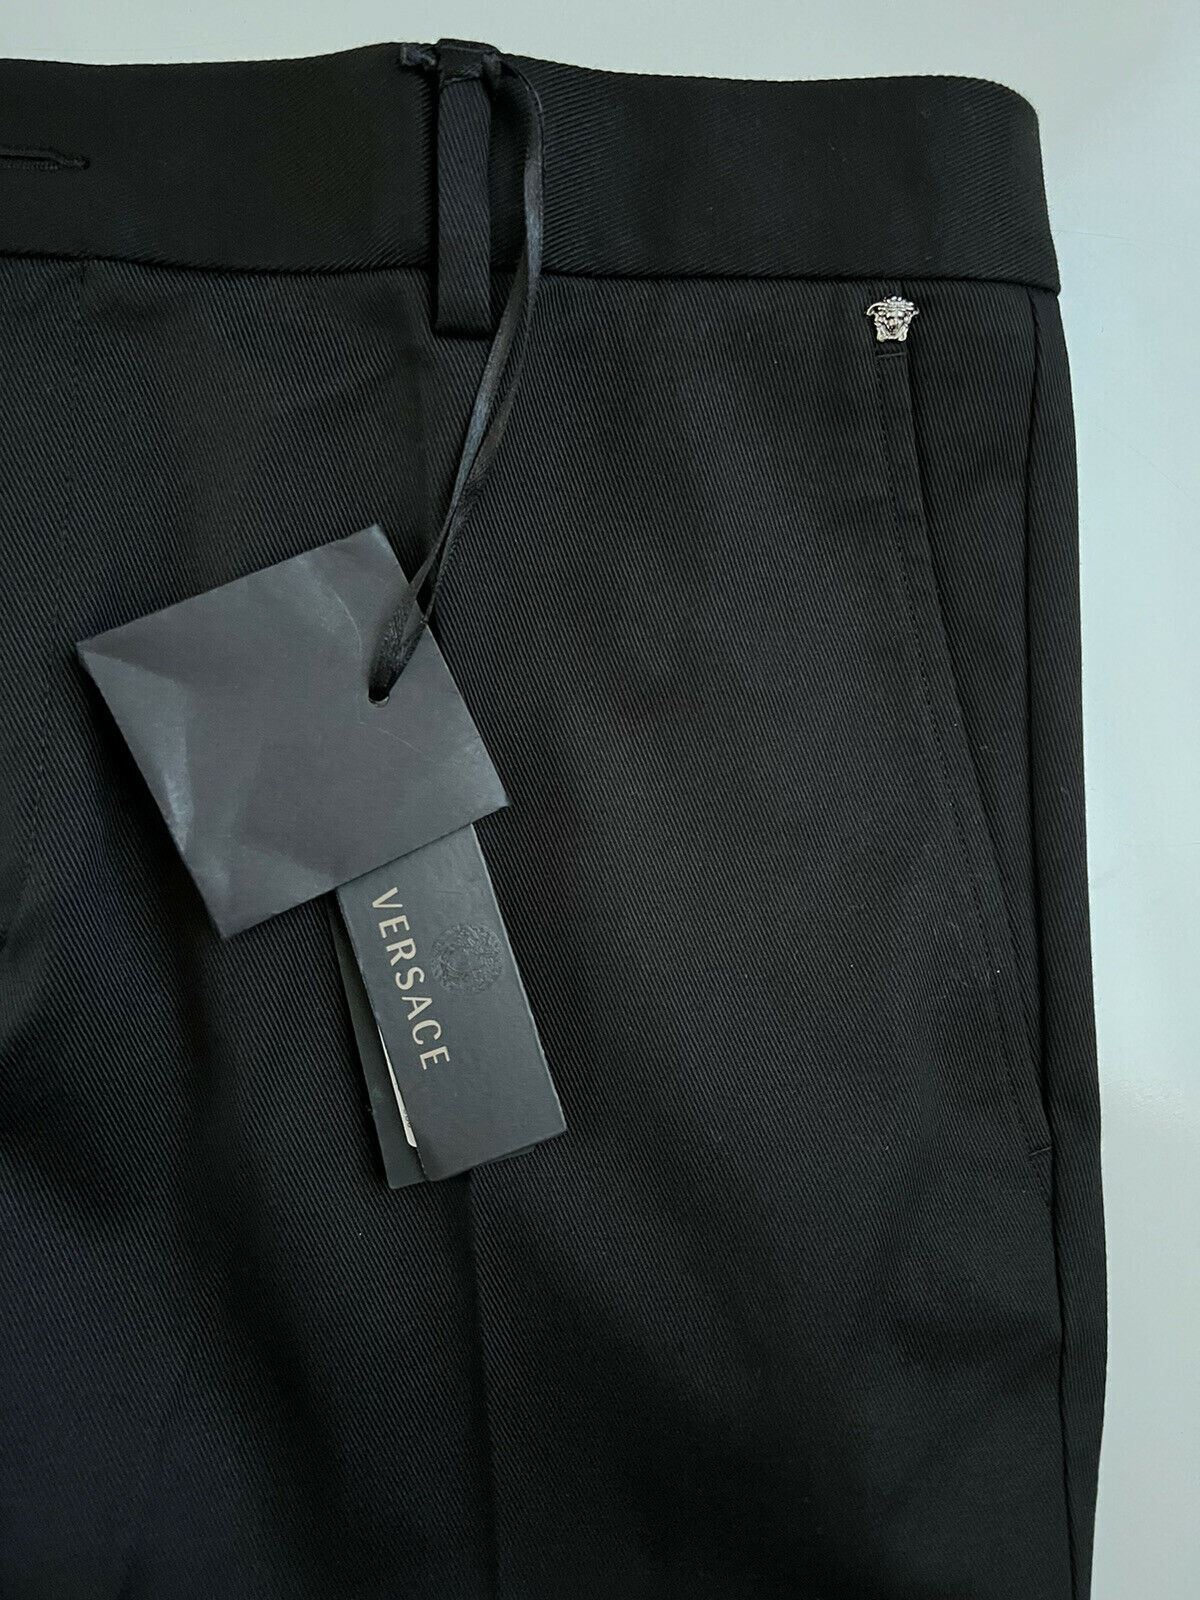 Мужские черные брюки Versace NWT 550 долларов США (52 евро), производство Италия A79901